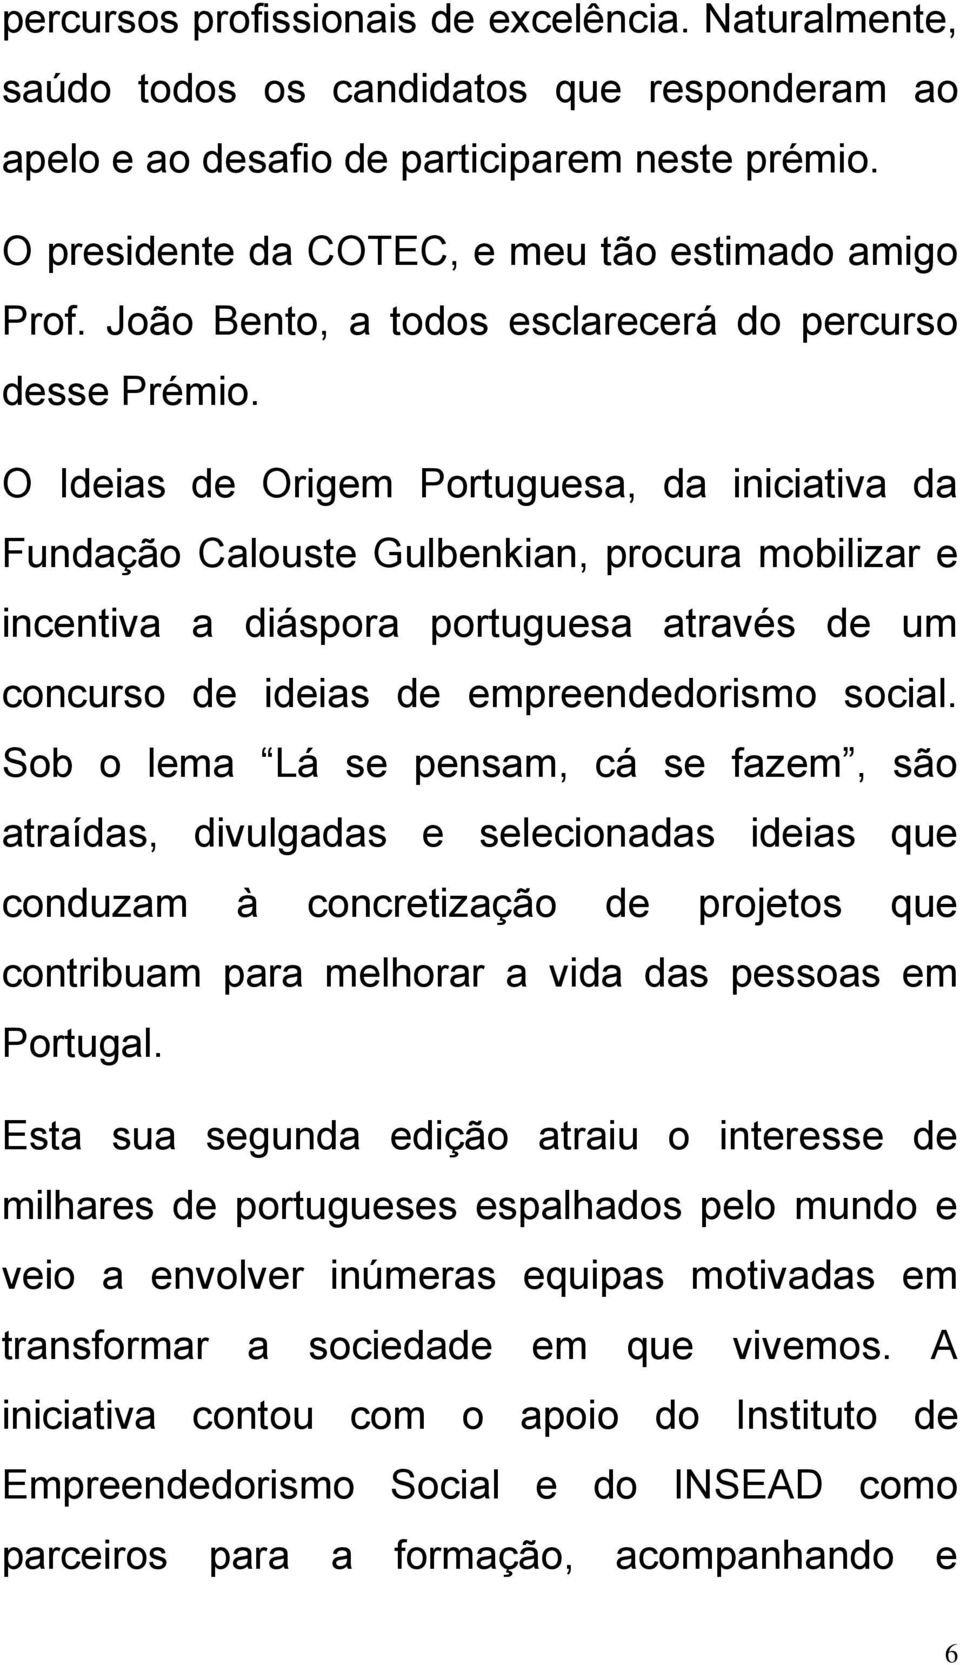 O Ideias de Origem Portuguesa, da iniciativa da Fundação Calouste Gulbenkian, procura mobilizar e incentiva a diáspora portuguesa através de um concurso de ideias de empreendedorismo social.